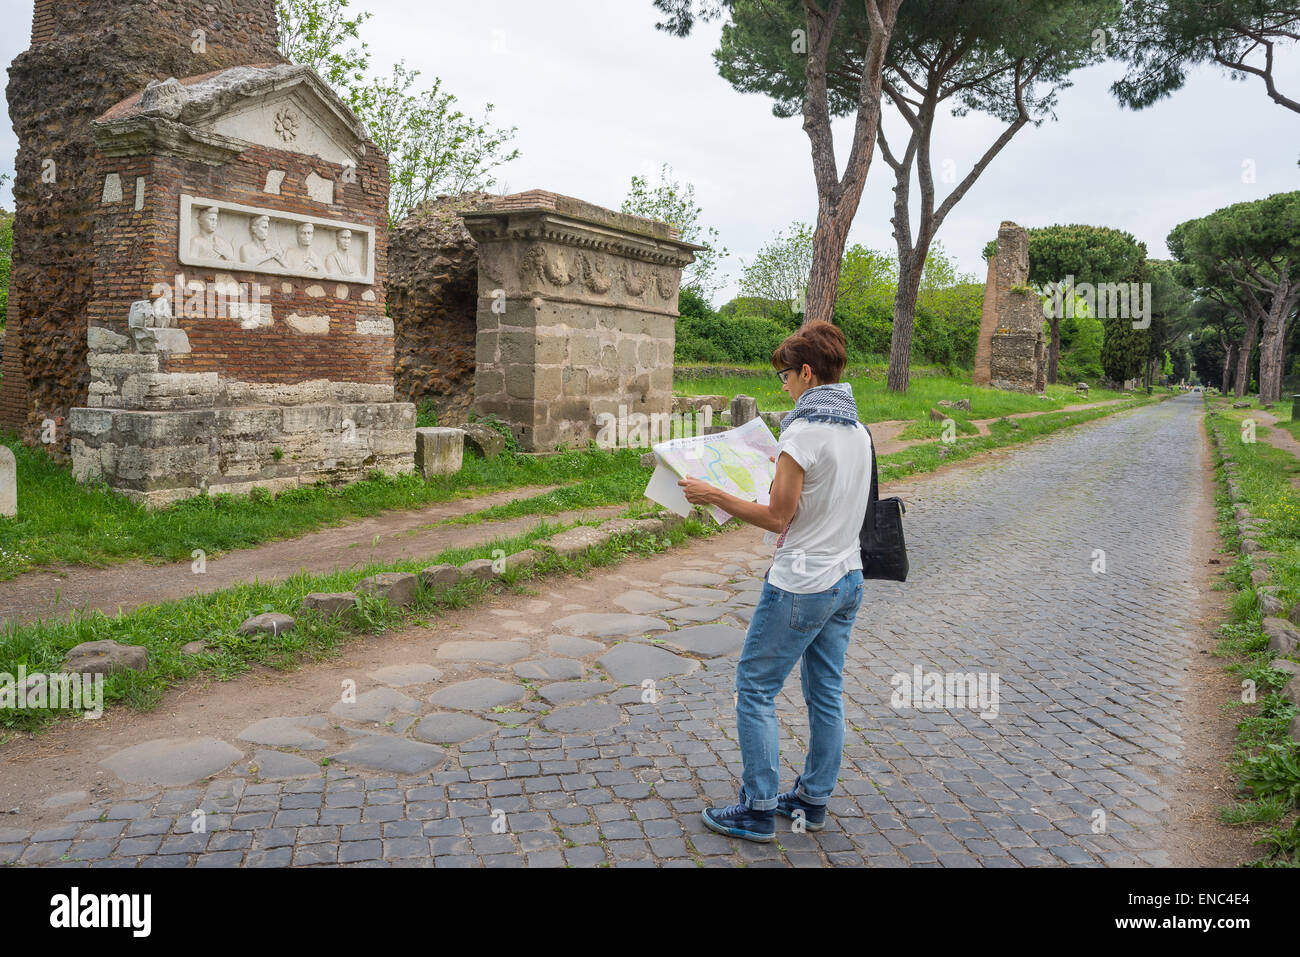 Touristische Karte der alten Straße "Via Appia Antica" in Rom Altstadt, garniert mit ineinandergreifenden Steinen Fortbewegung. Stockfoto